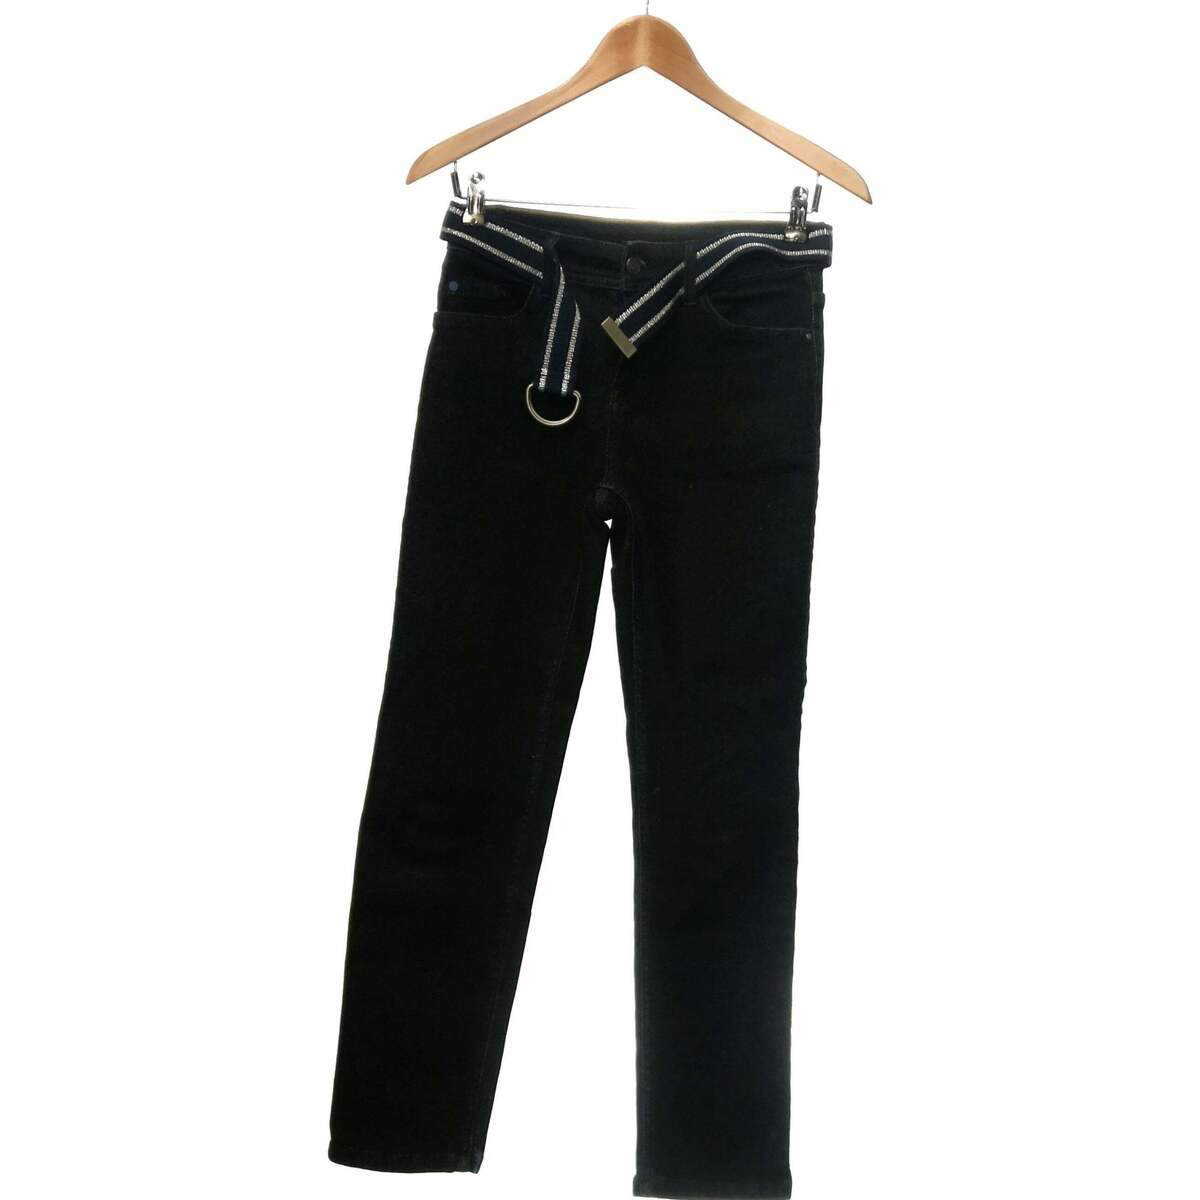 Vêtements Femme midi Jeans Bonobo midi jean slim femme  34 - T0 - XS Bleu Bleu